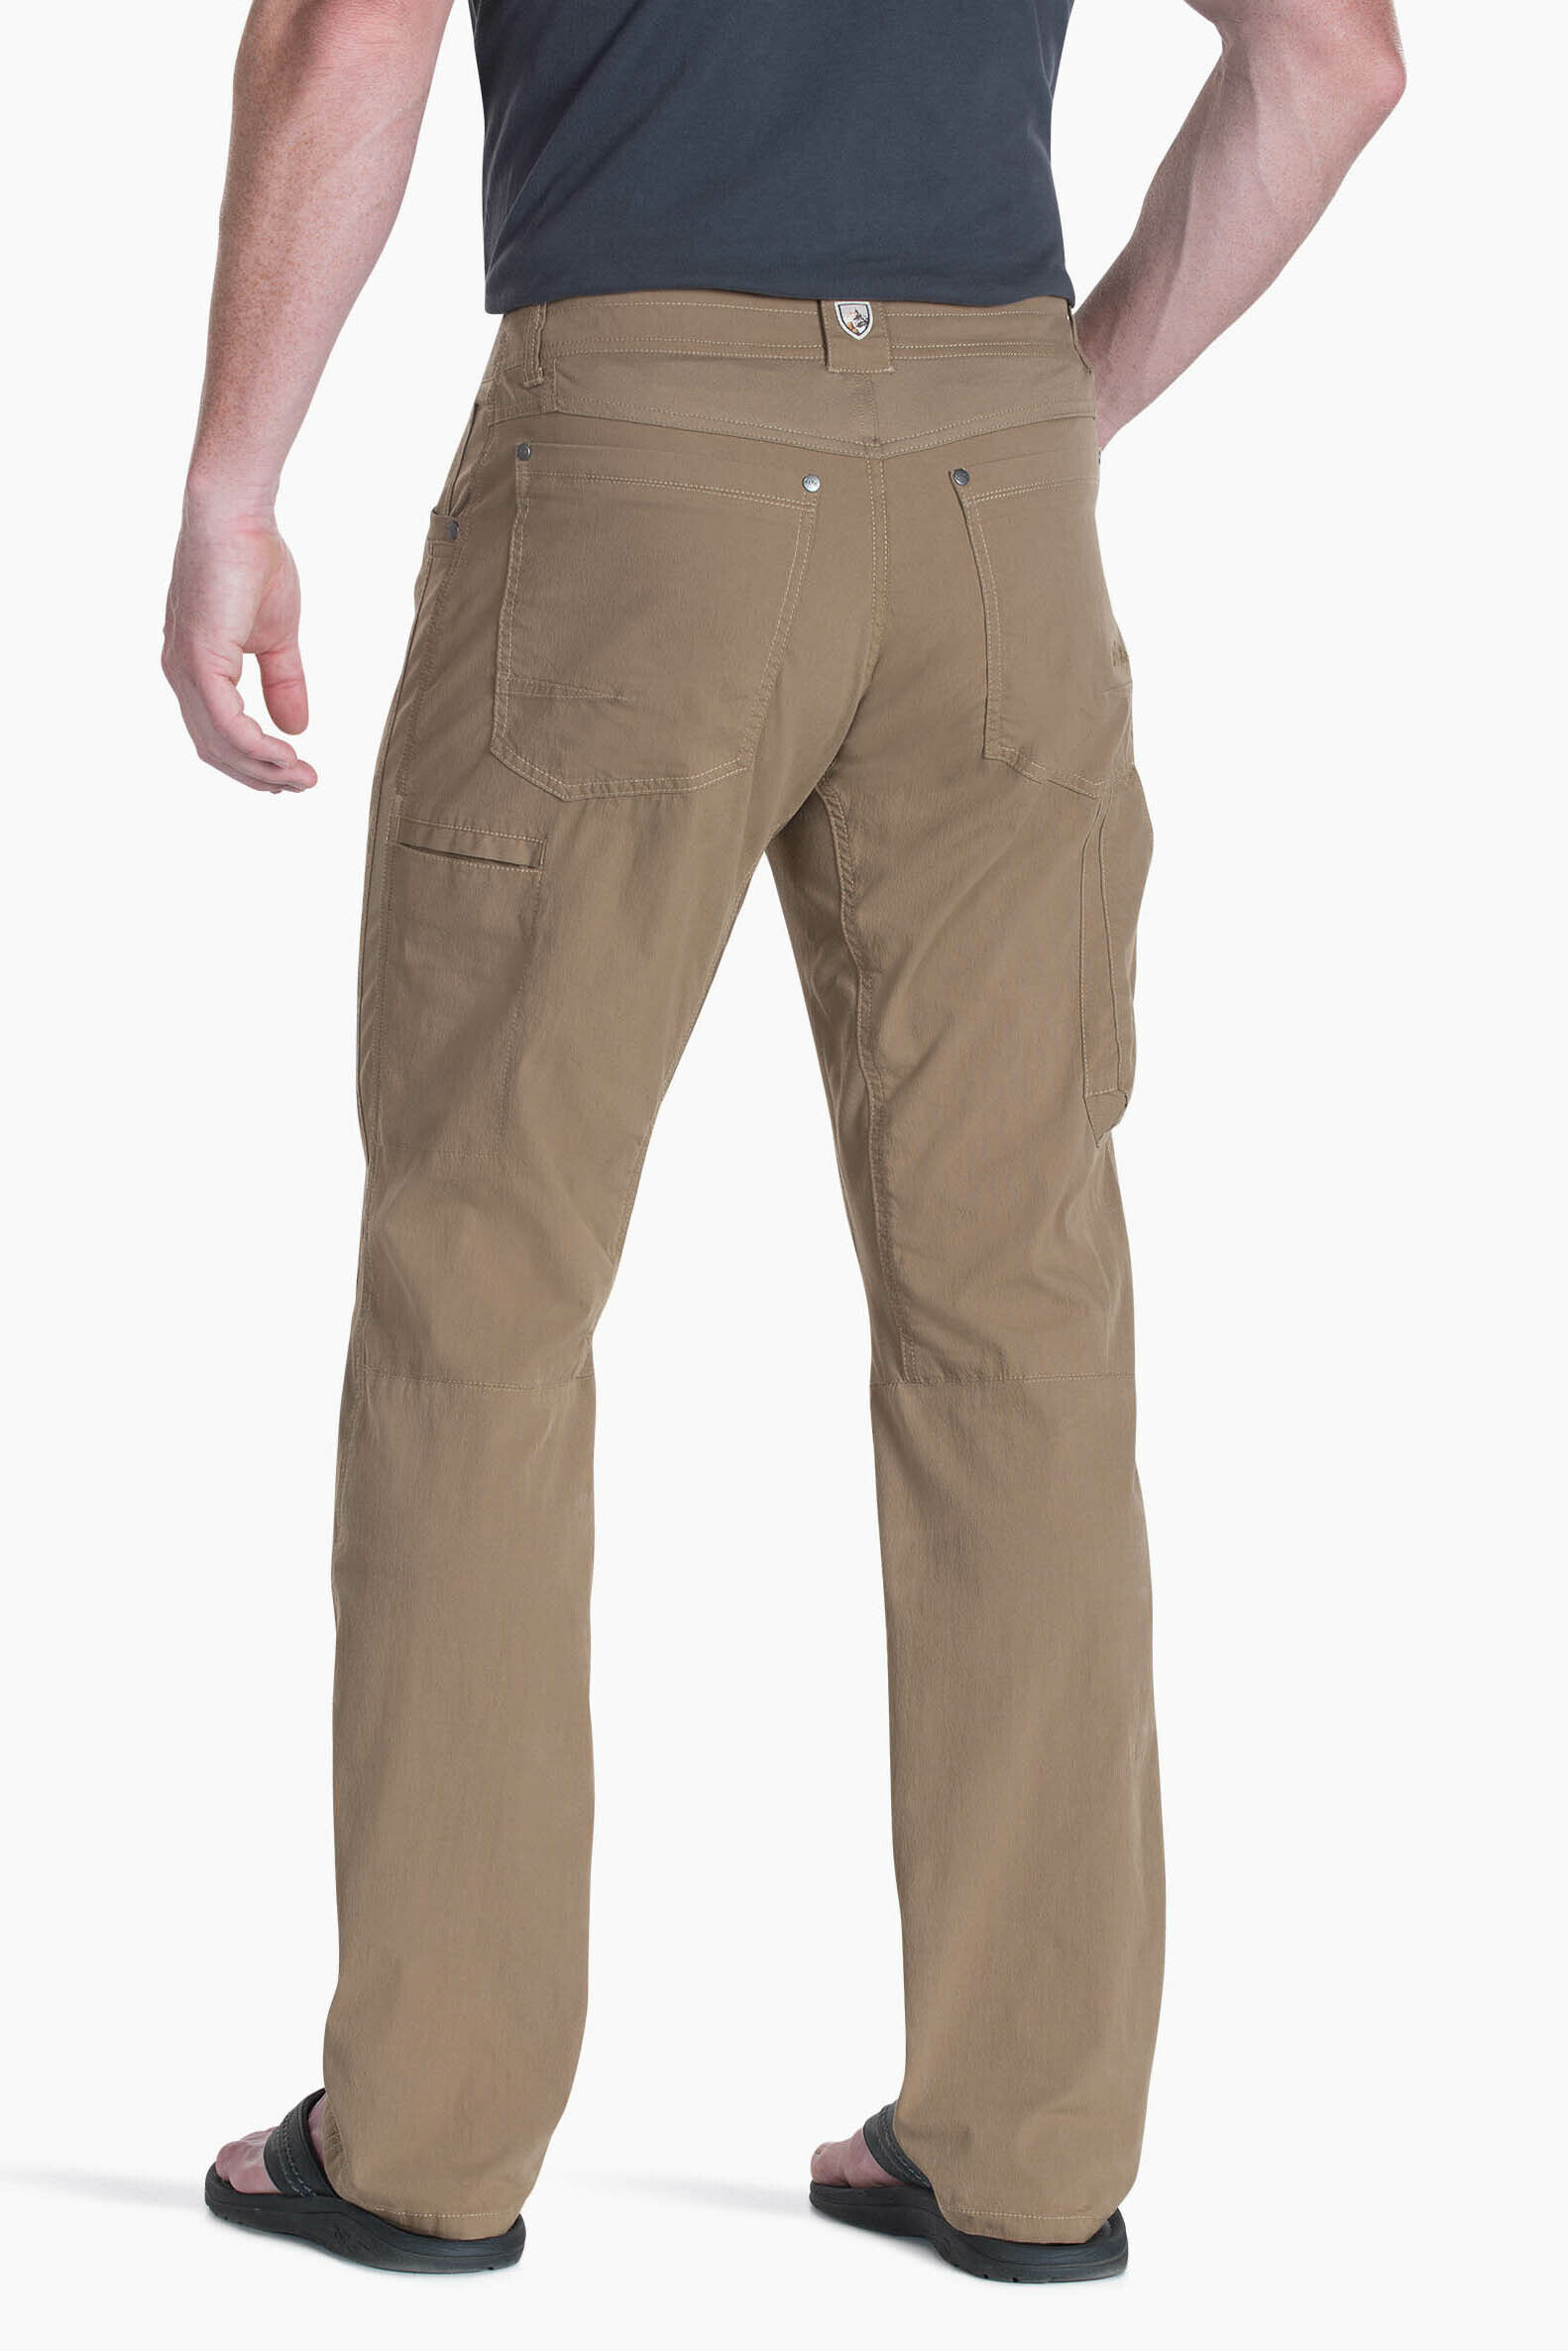 KUHL Radikl Pants - Men's | REI Co-op | Khaki pants men, Mens pants, Mens  pants casual